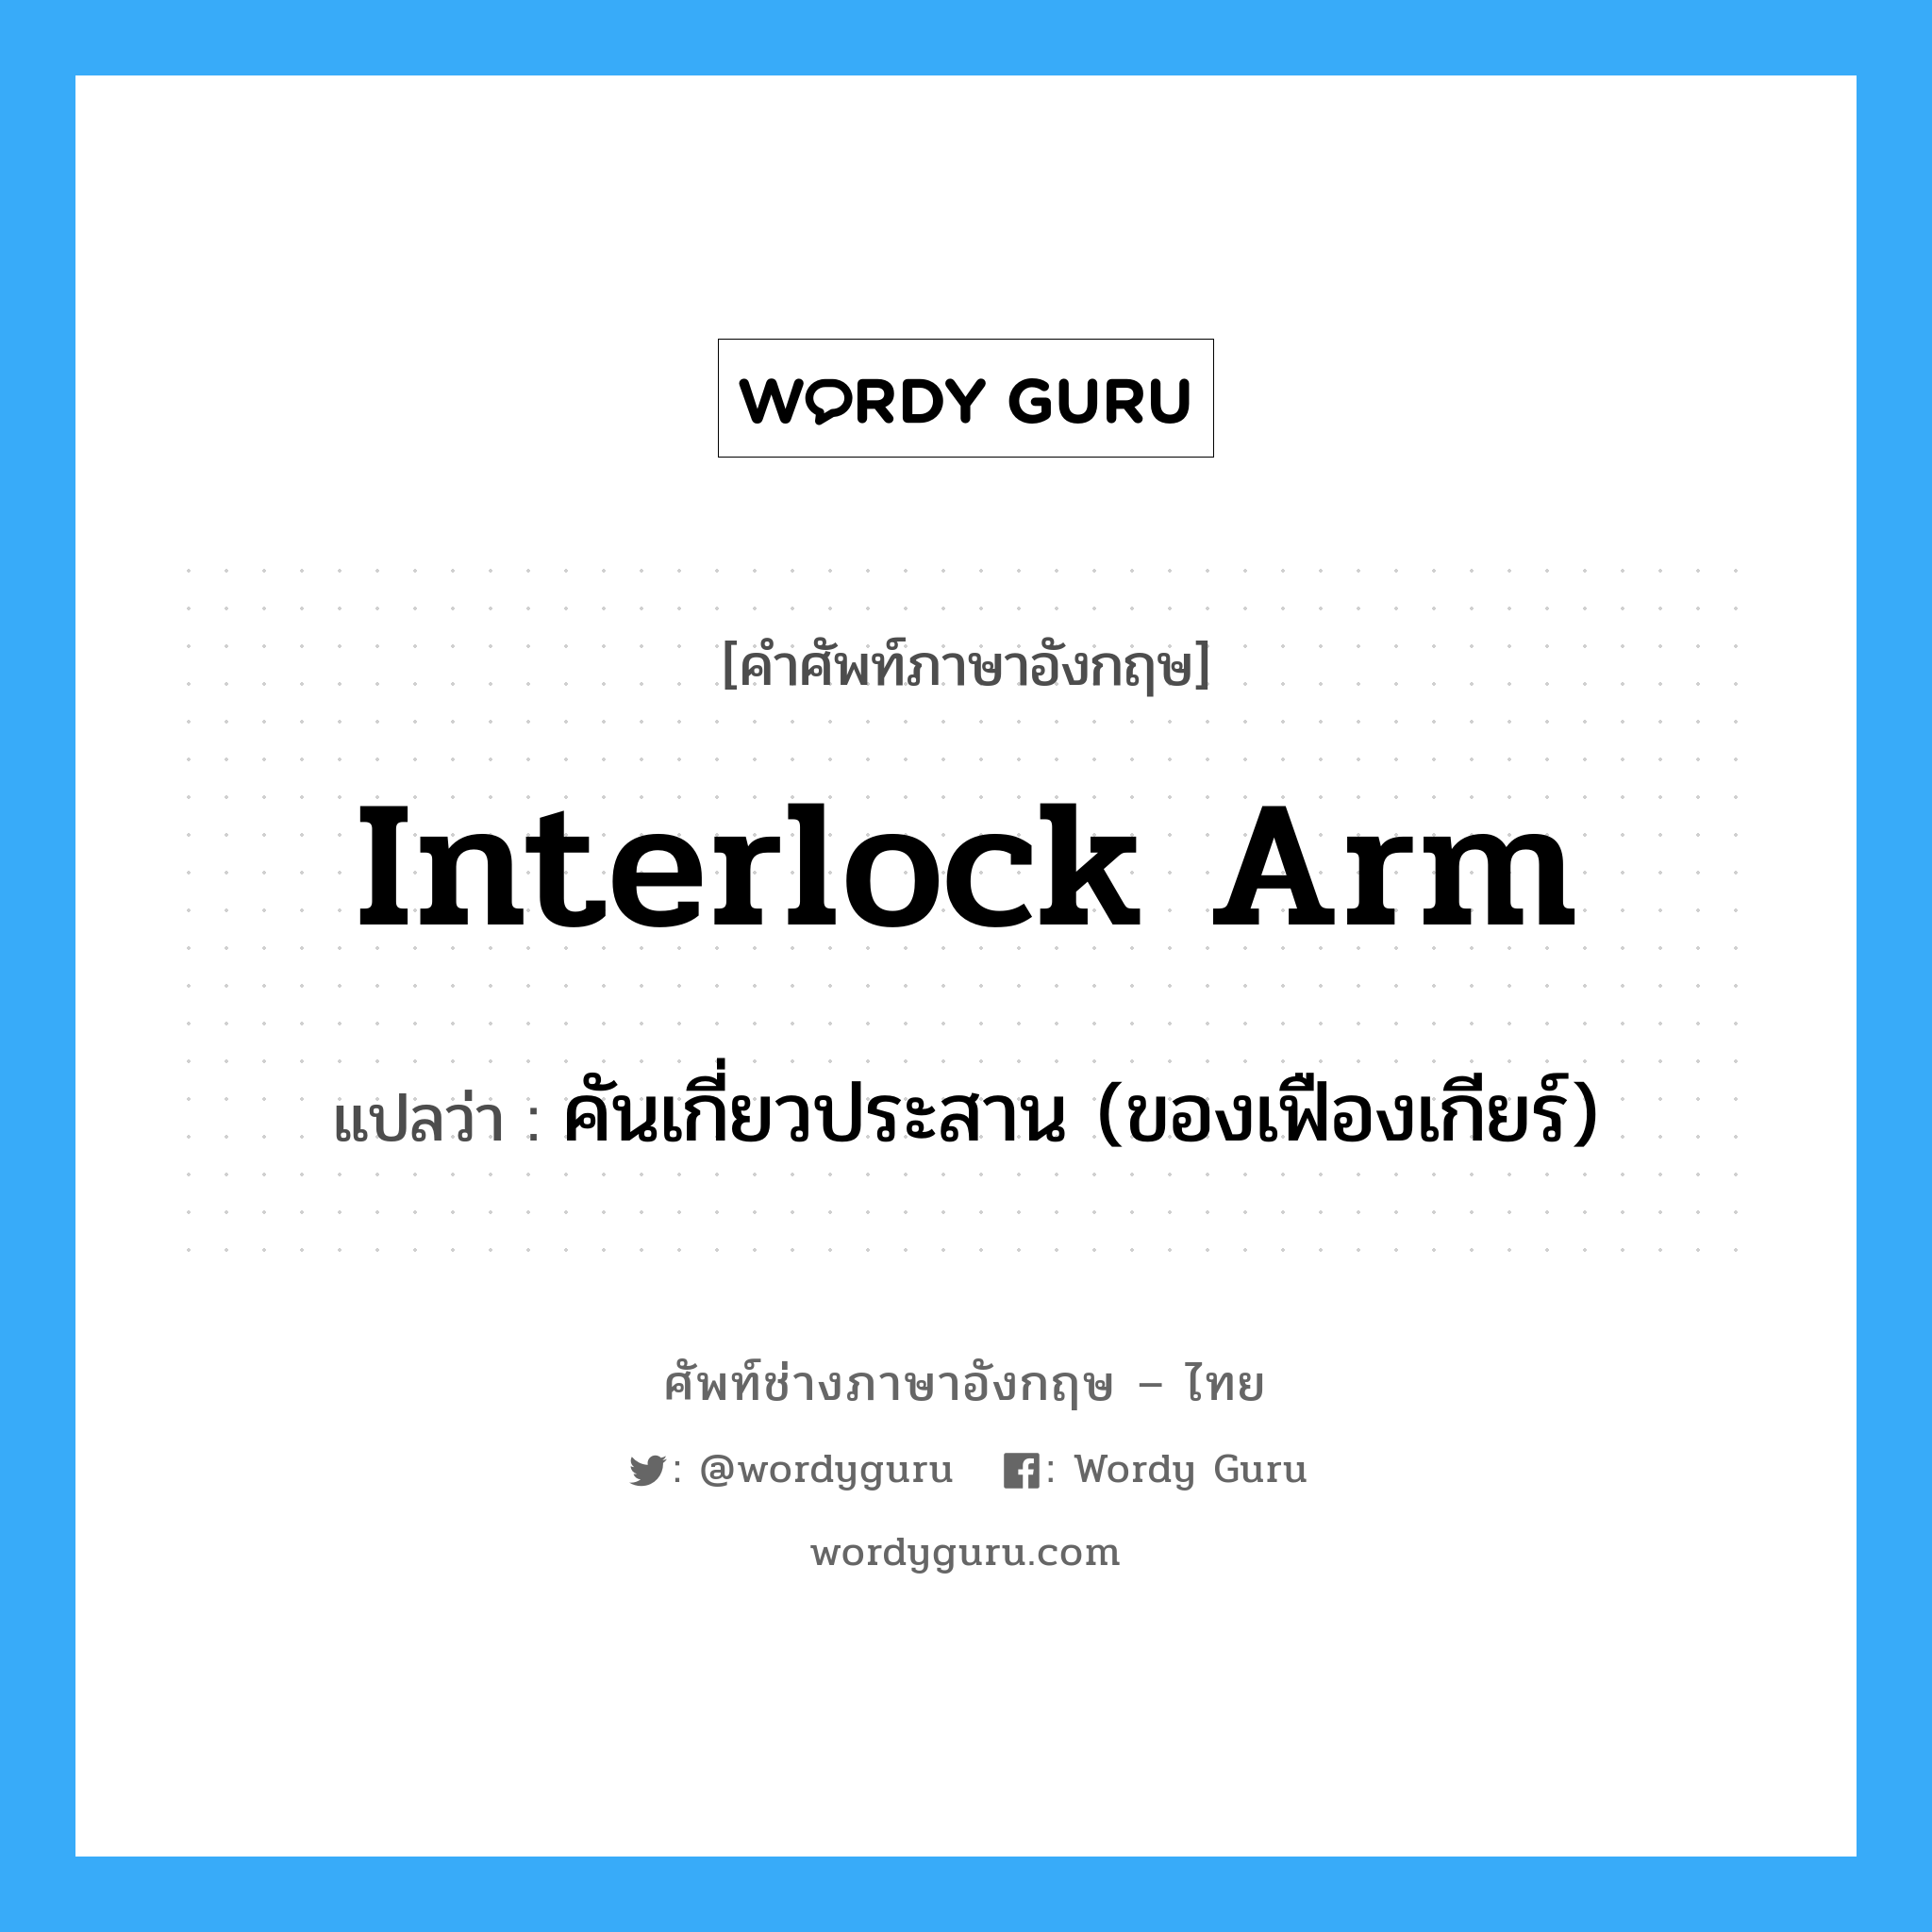 คันเกี่ยวประสาน (ของเฟืองเกียร์) ภาษาอังกฤษ?, คำศัพท์ช่างภาษาอังกฤษ - ไทย คันเกี่ยวประสาน (ของเฟืองเกียร์) คำศัพท์ภาษาอังกฤษ คันเกี่ยวประสาน (ของเฟืองเกียร์) แปลว่า interlock arm